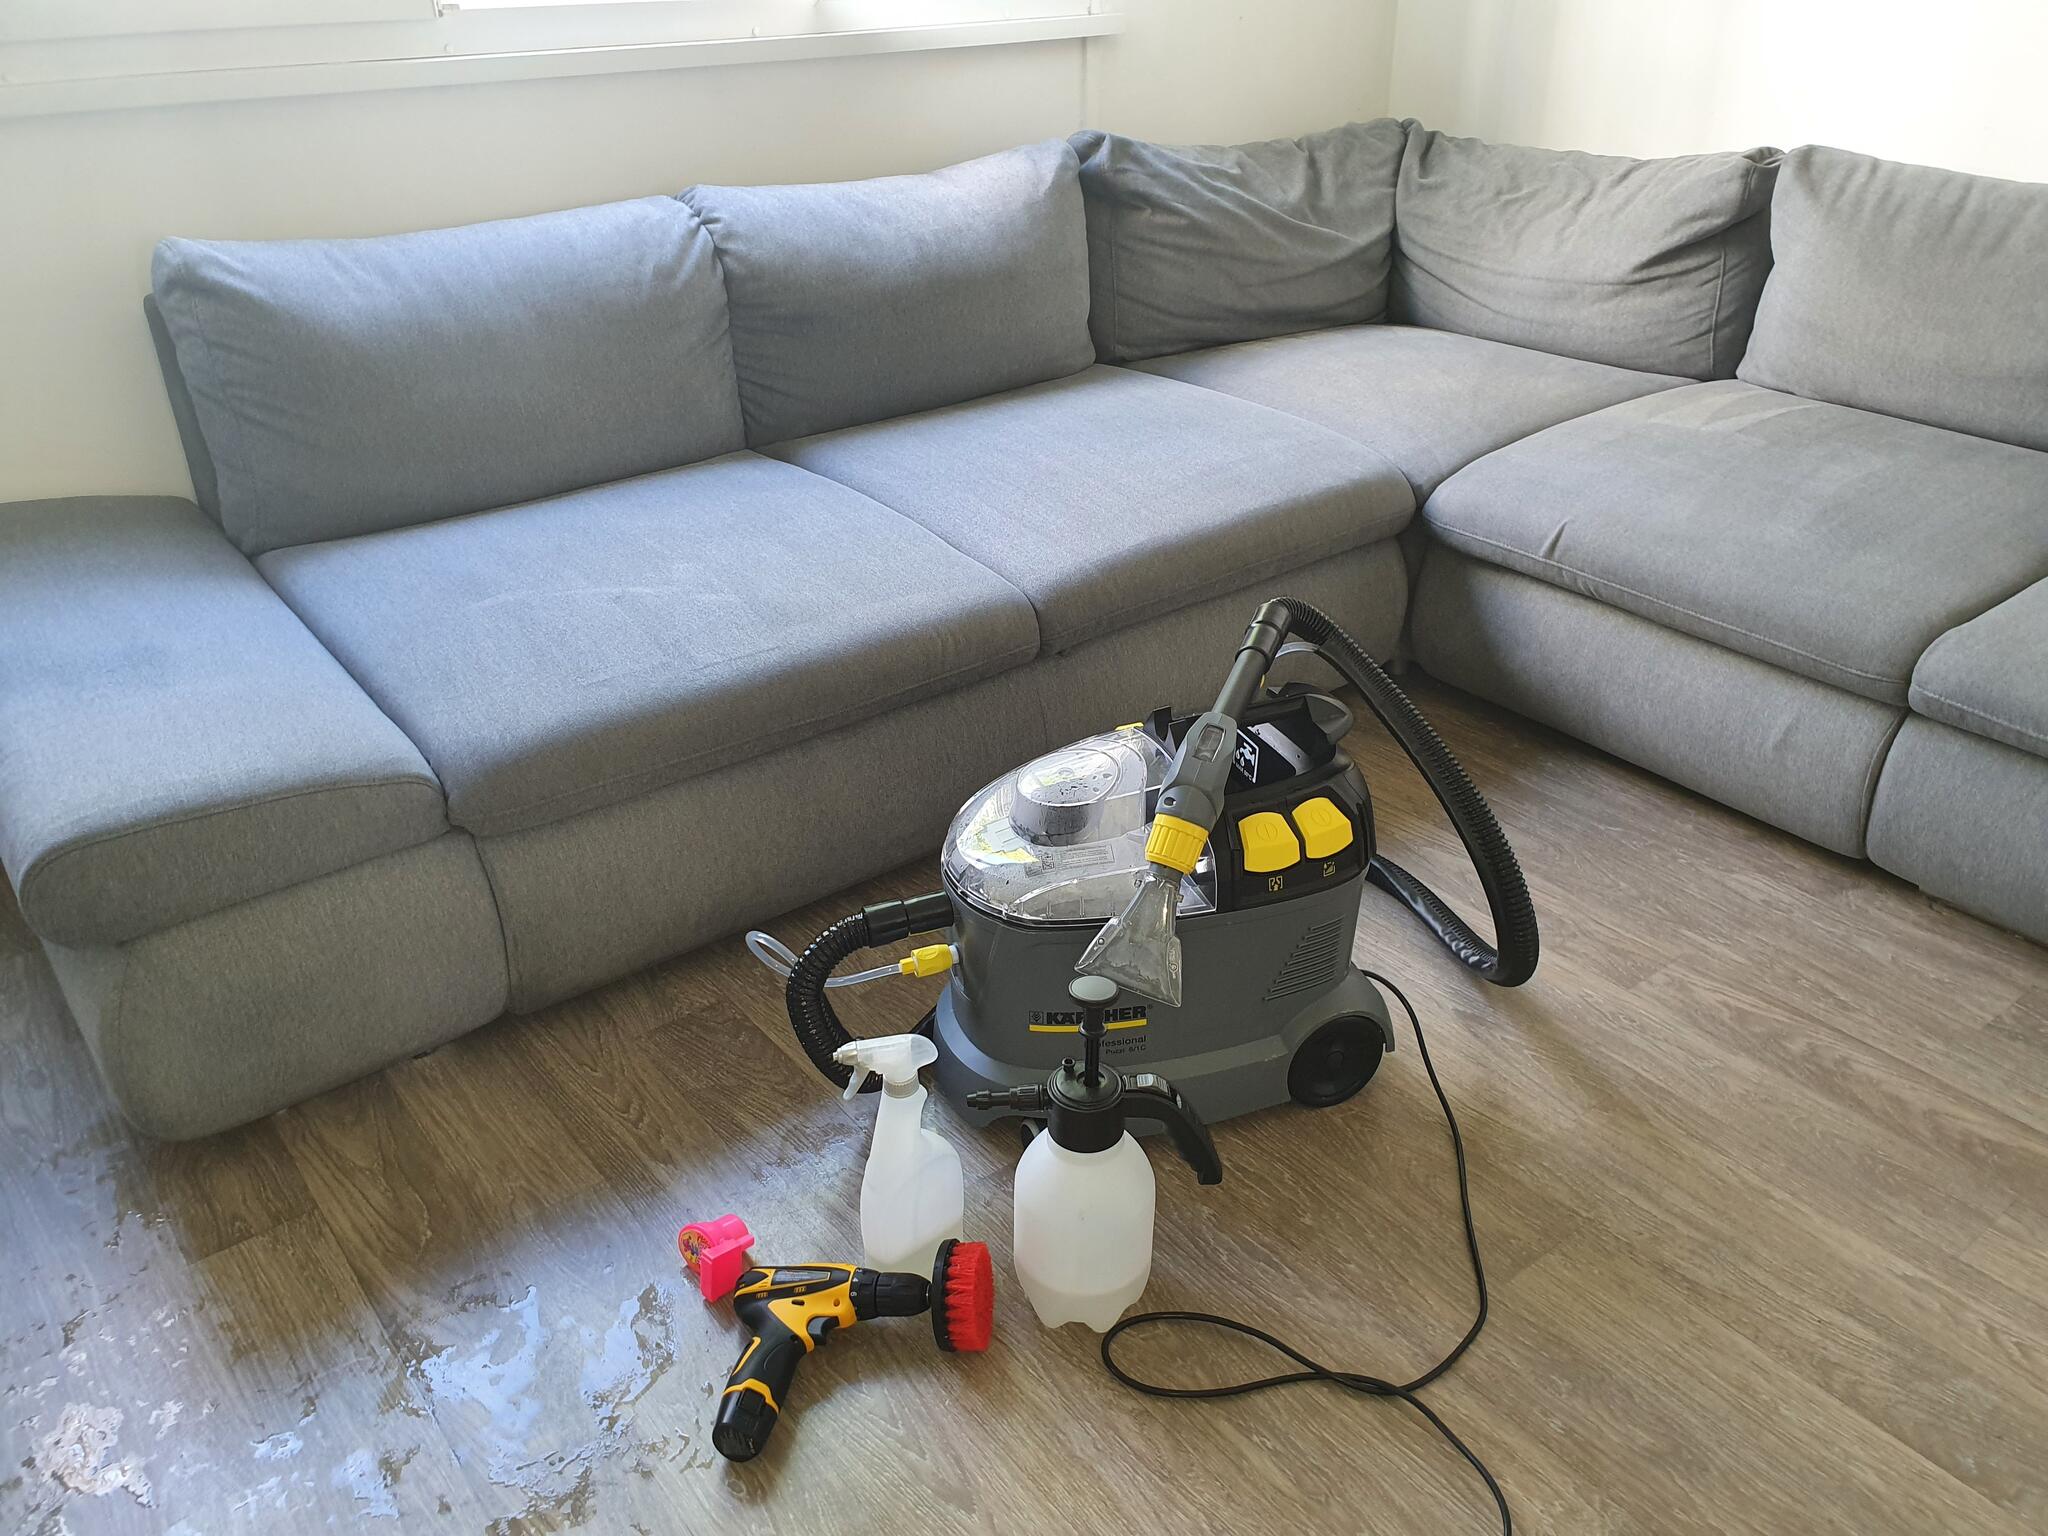 Sofa Clean - Entreprise de nettoyage de canapé à domicile France